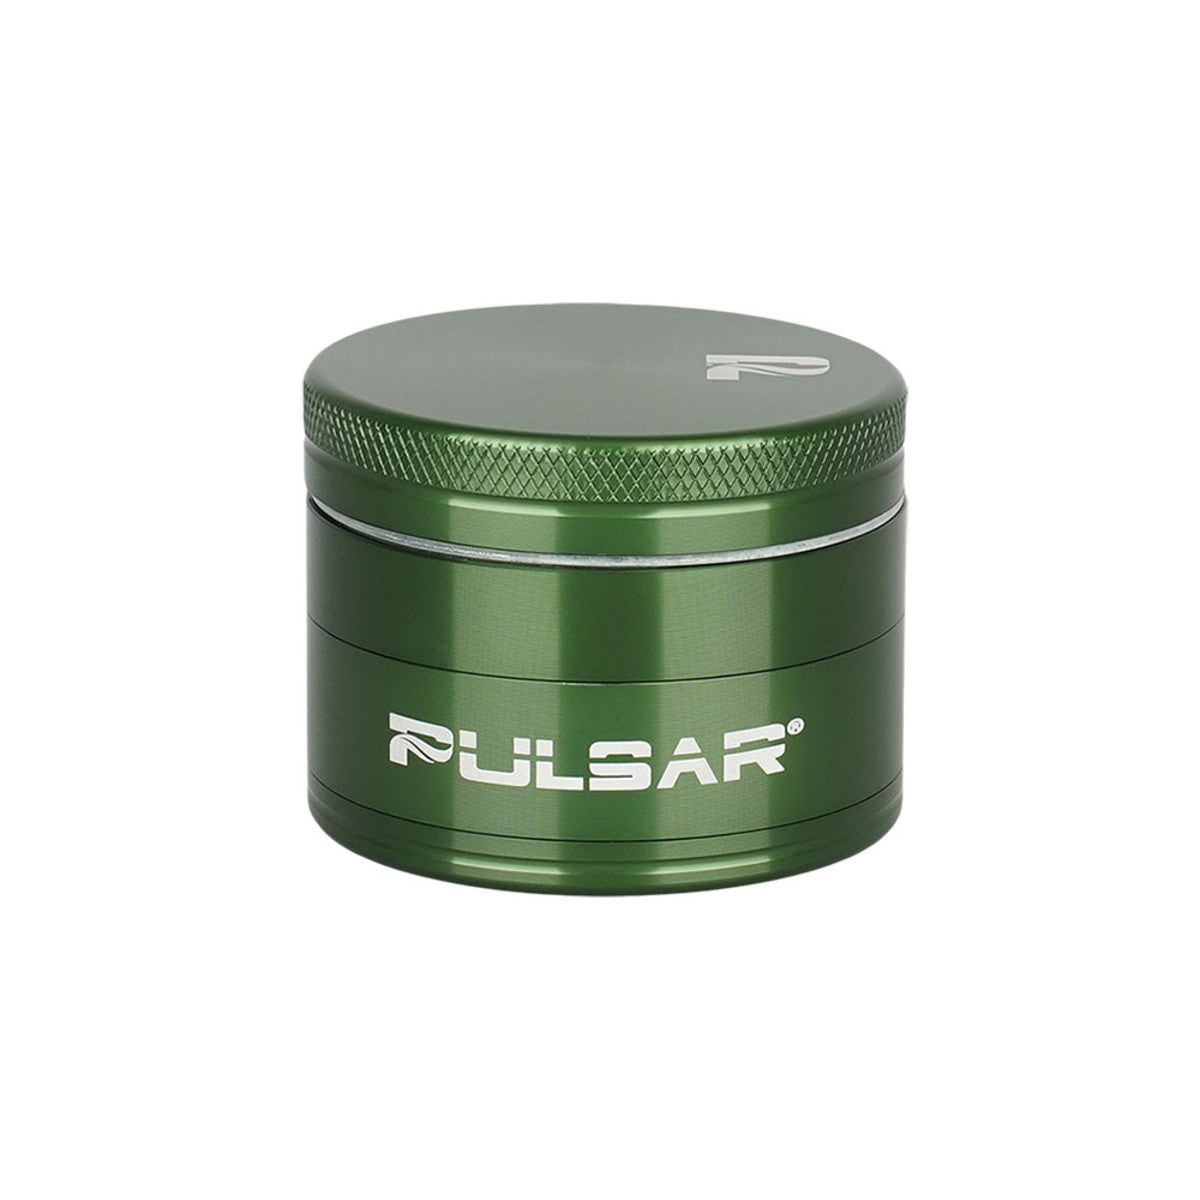 Pulsar Solid Top Aluminum Grinder - GR762 - 4pc / 2"